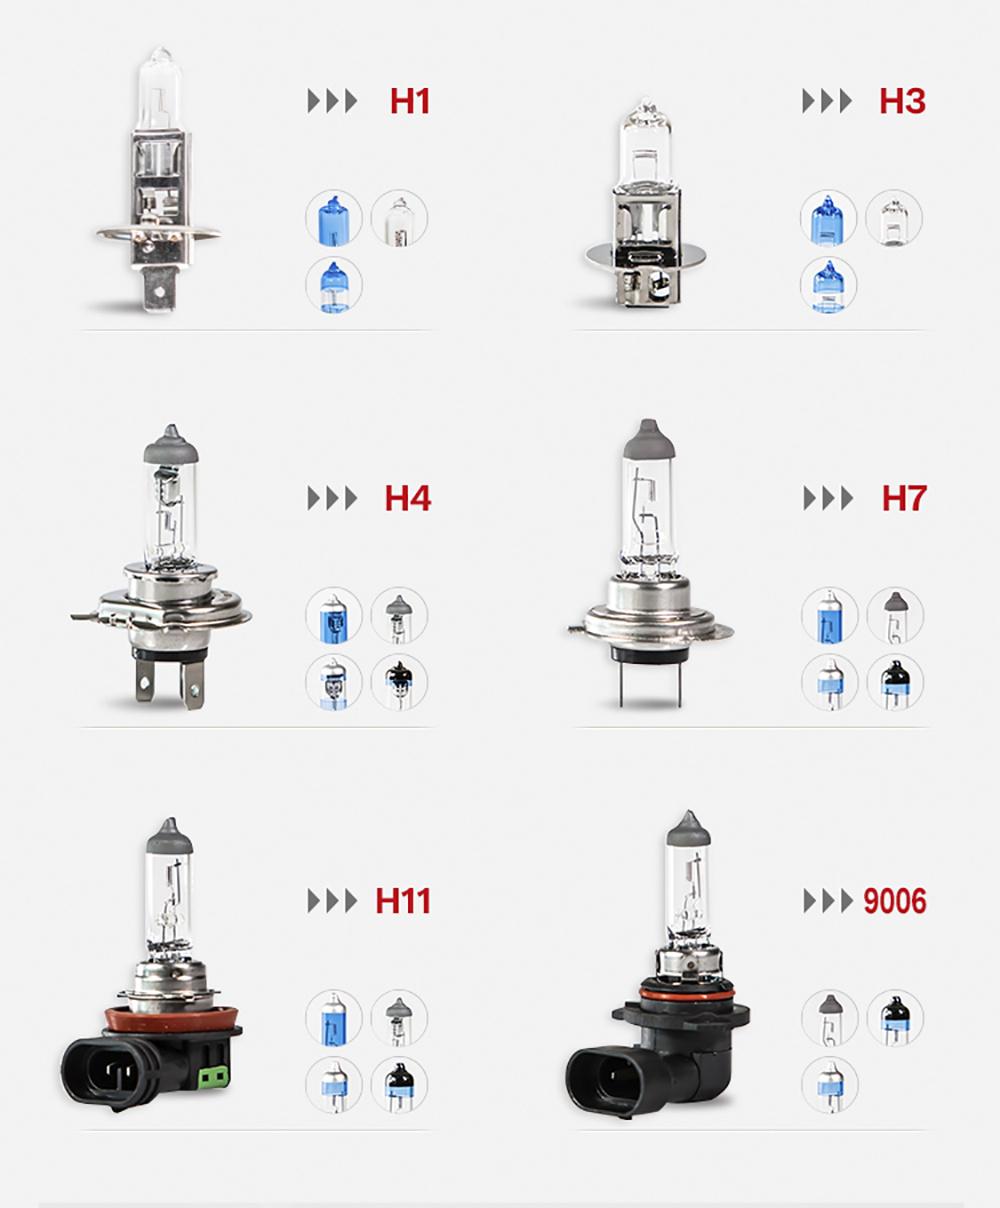 Factory H5 Halogen Bulb Capsules 12V 24V 100/100W 130/130W for Headlight Lamp